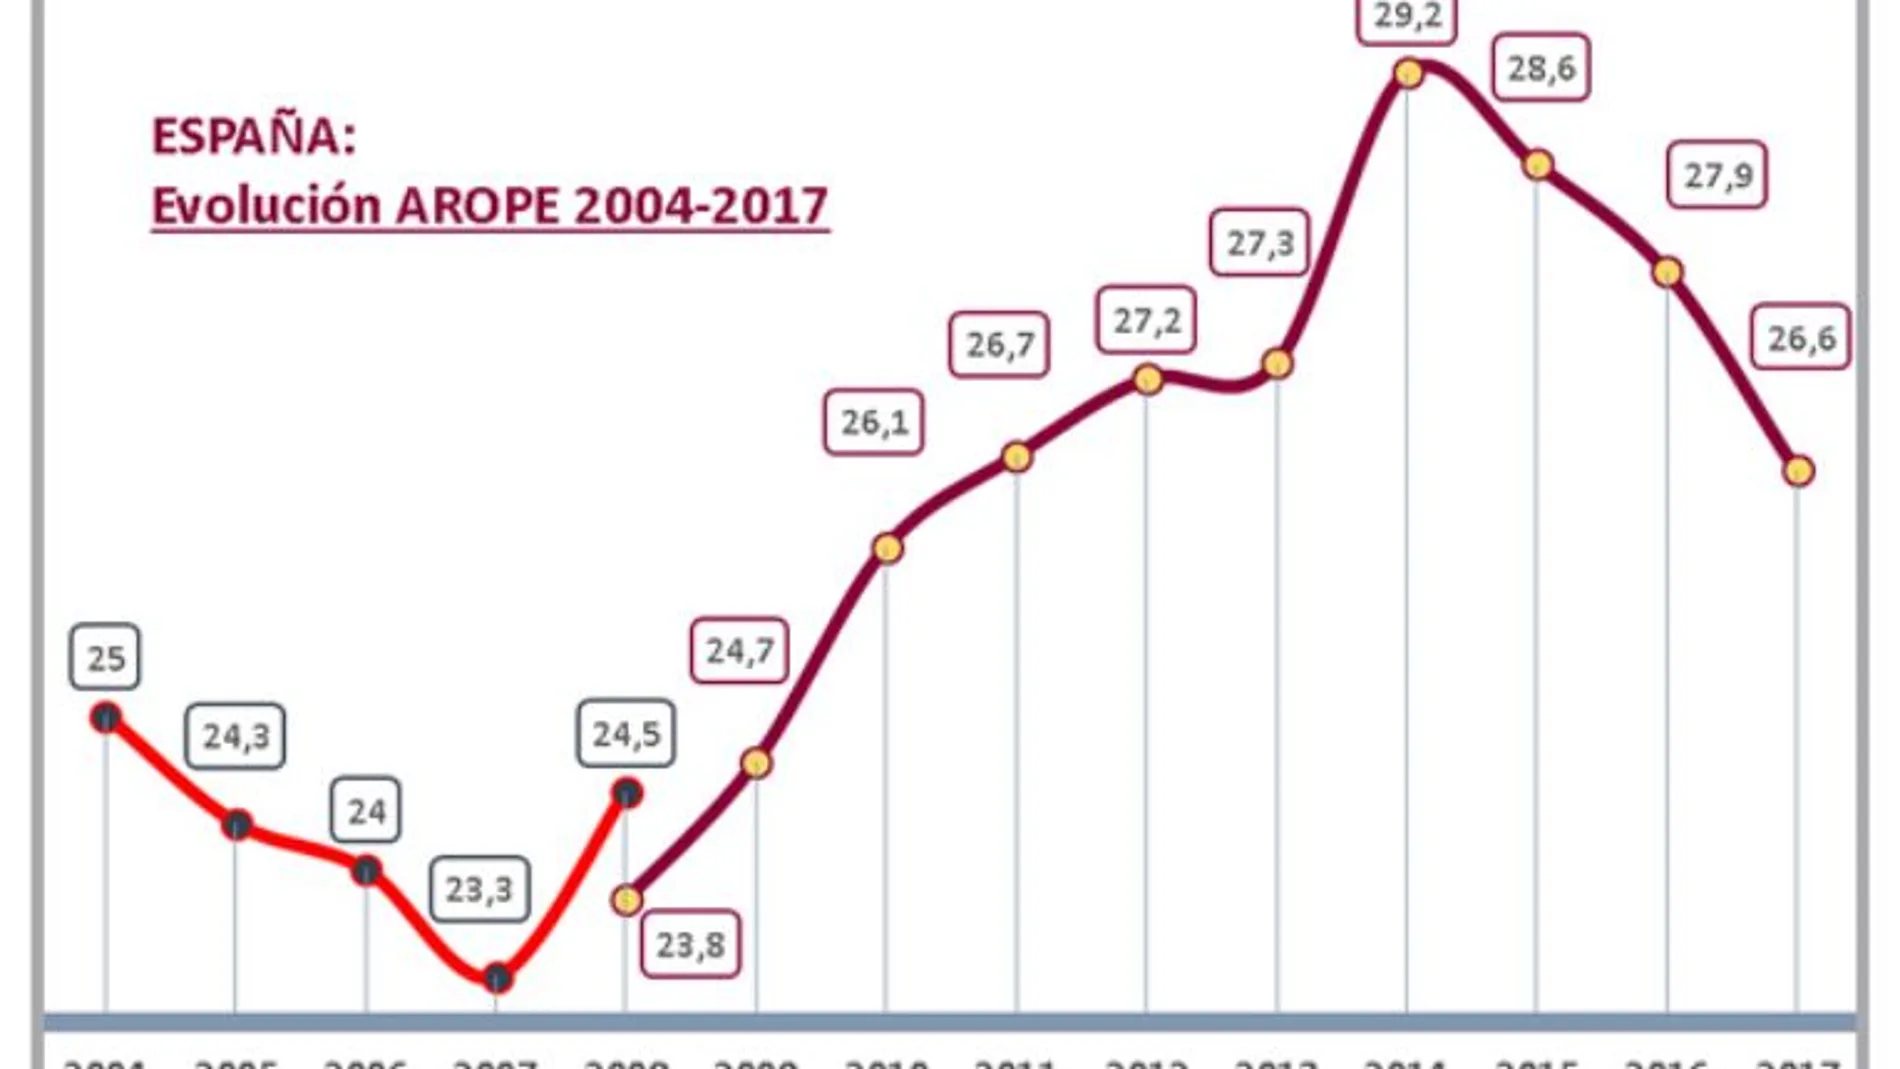 Evolución del índice de pobreza desde 2004 a 2017